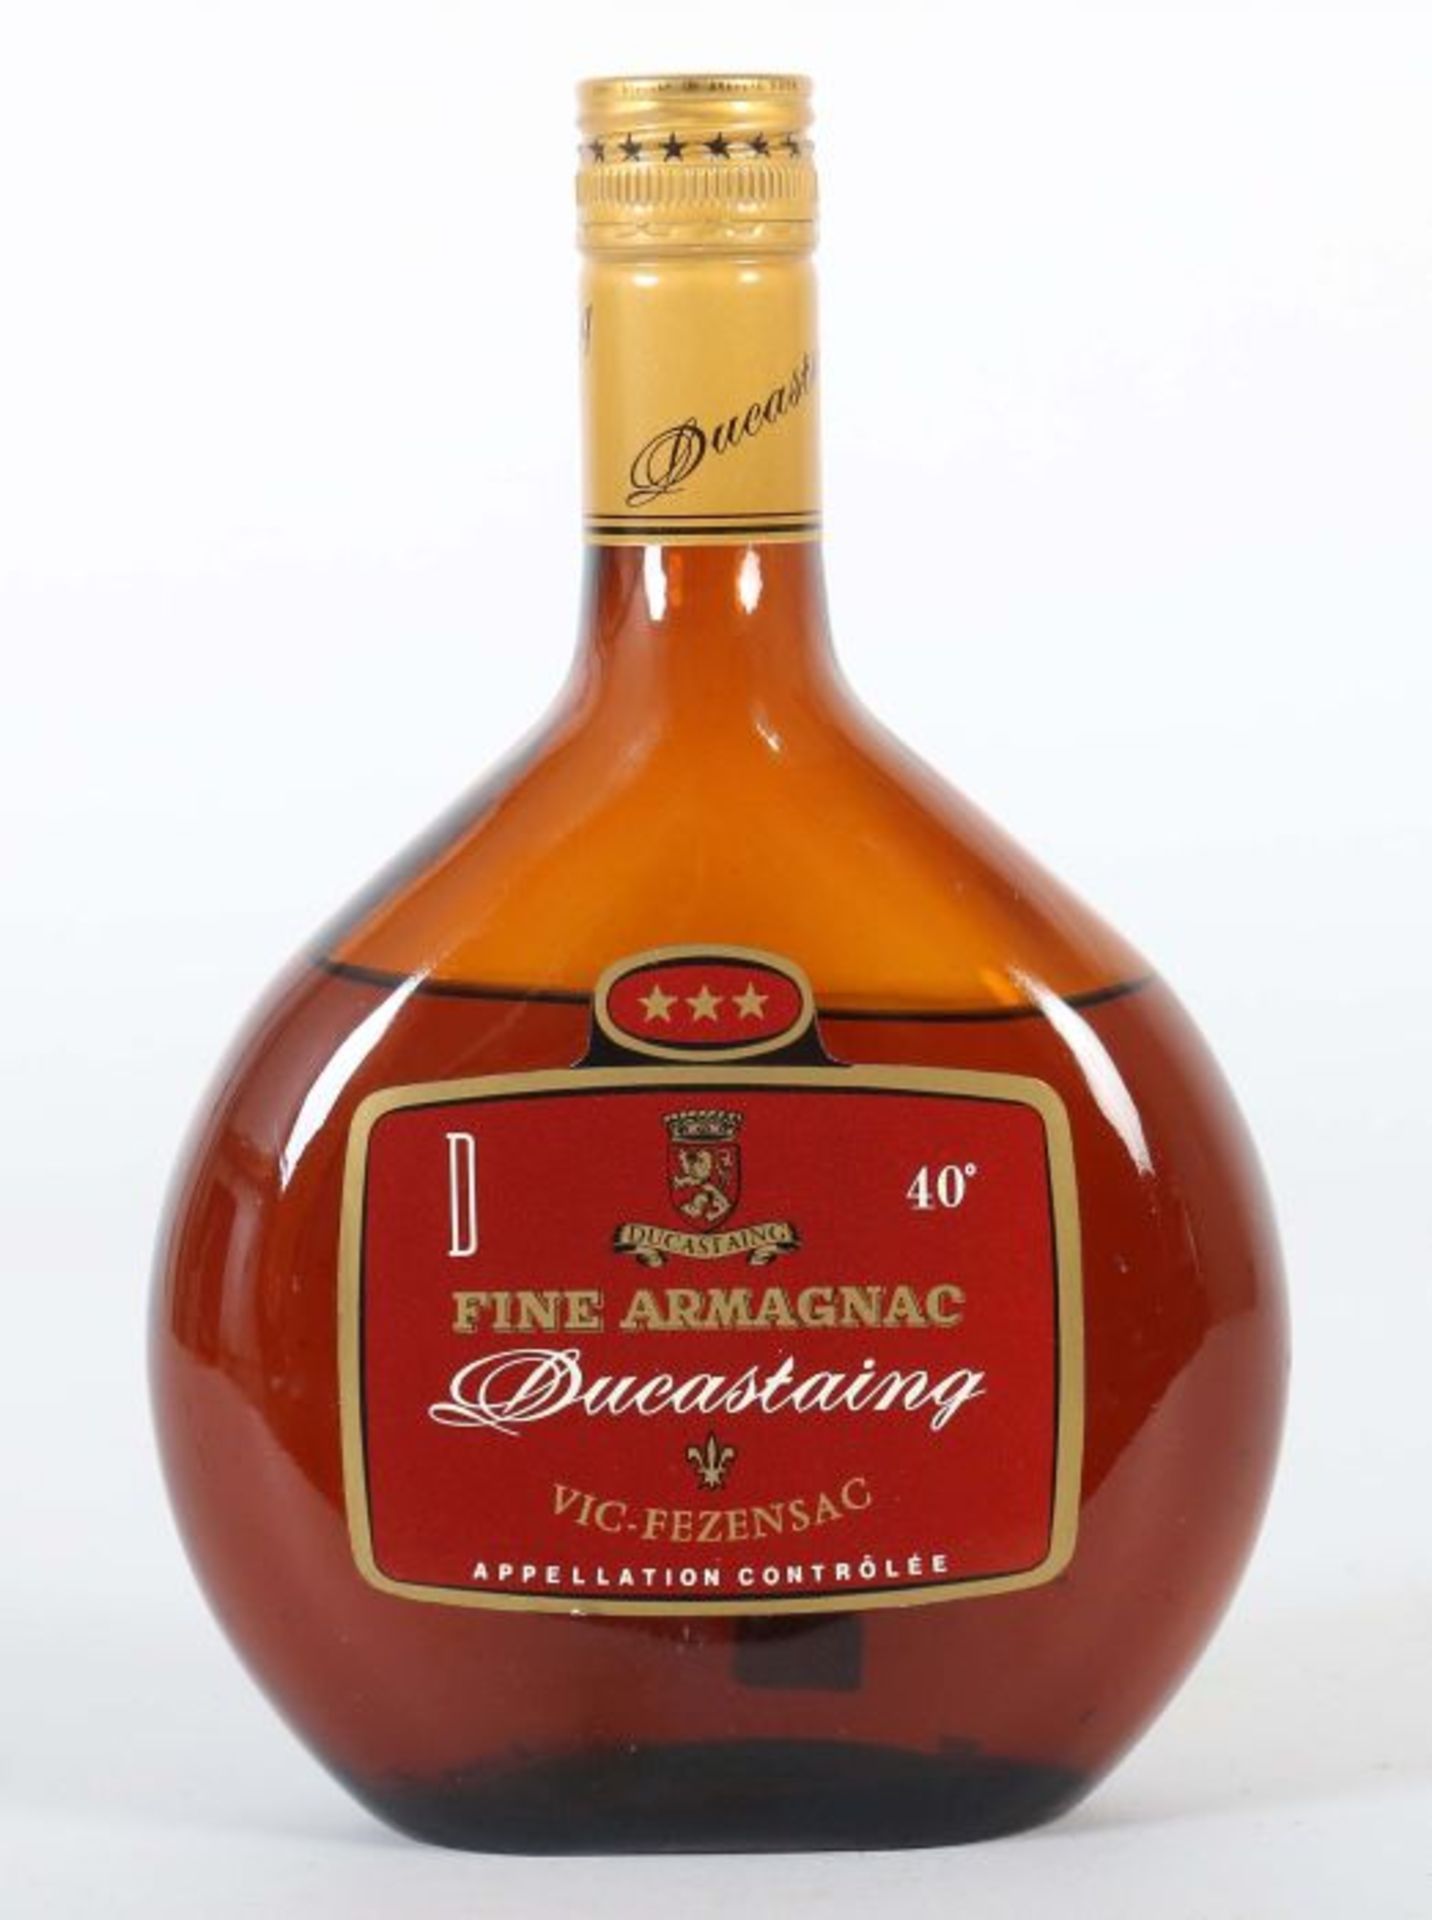 Ducastaing Fine Armagnac, Vic-Fezensac, in Beutel-Flasche, wohl Ende 1970er Jahre, 40% vol., 0,7 l.